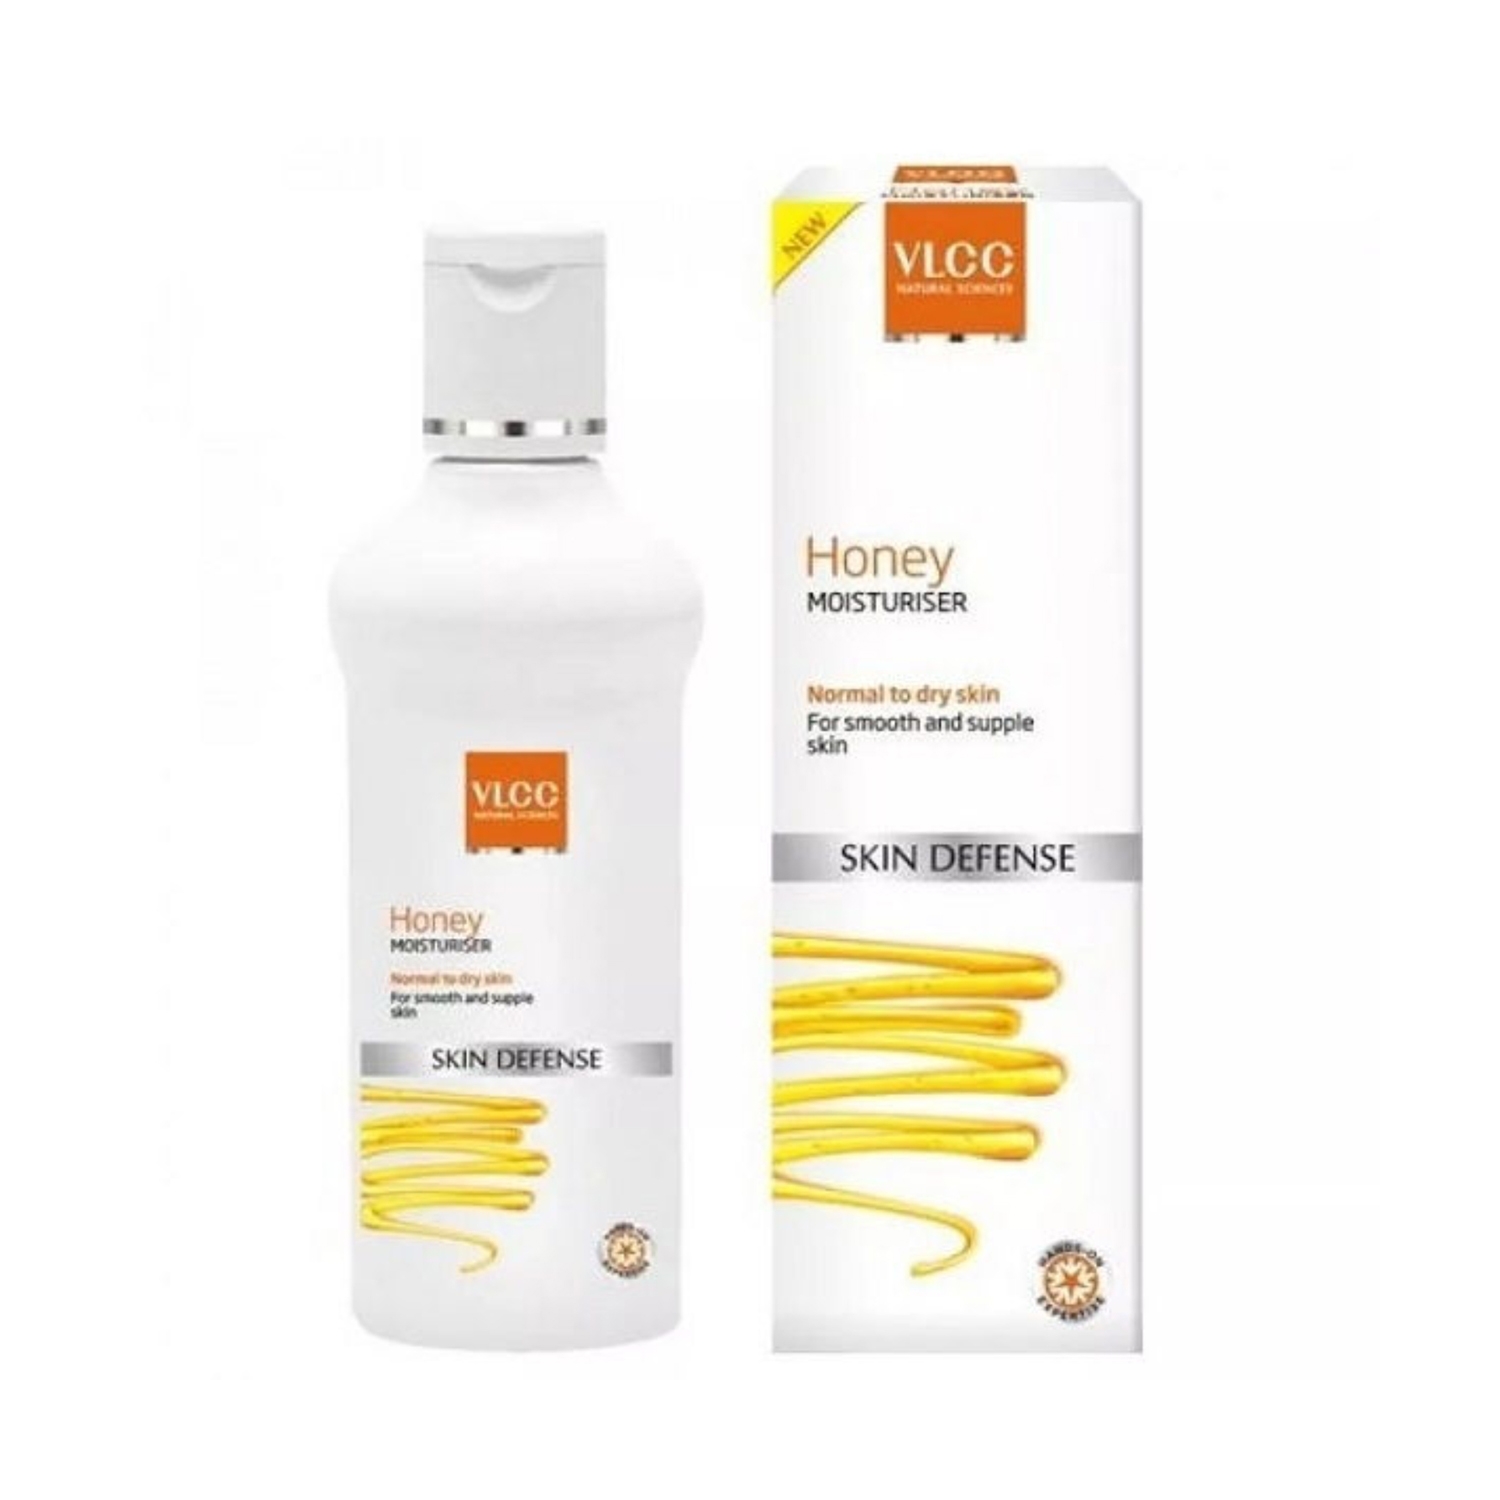 VLCC | VLCC Honey Moisturiser Skin Defense (100g)